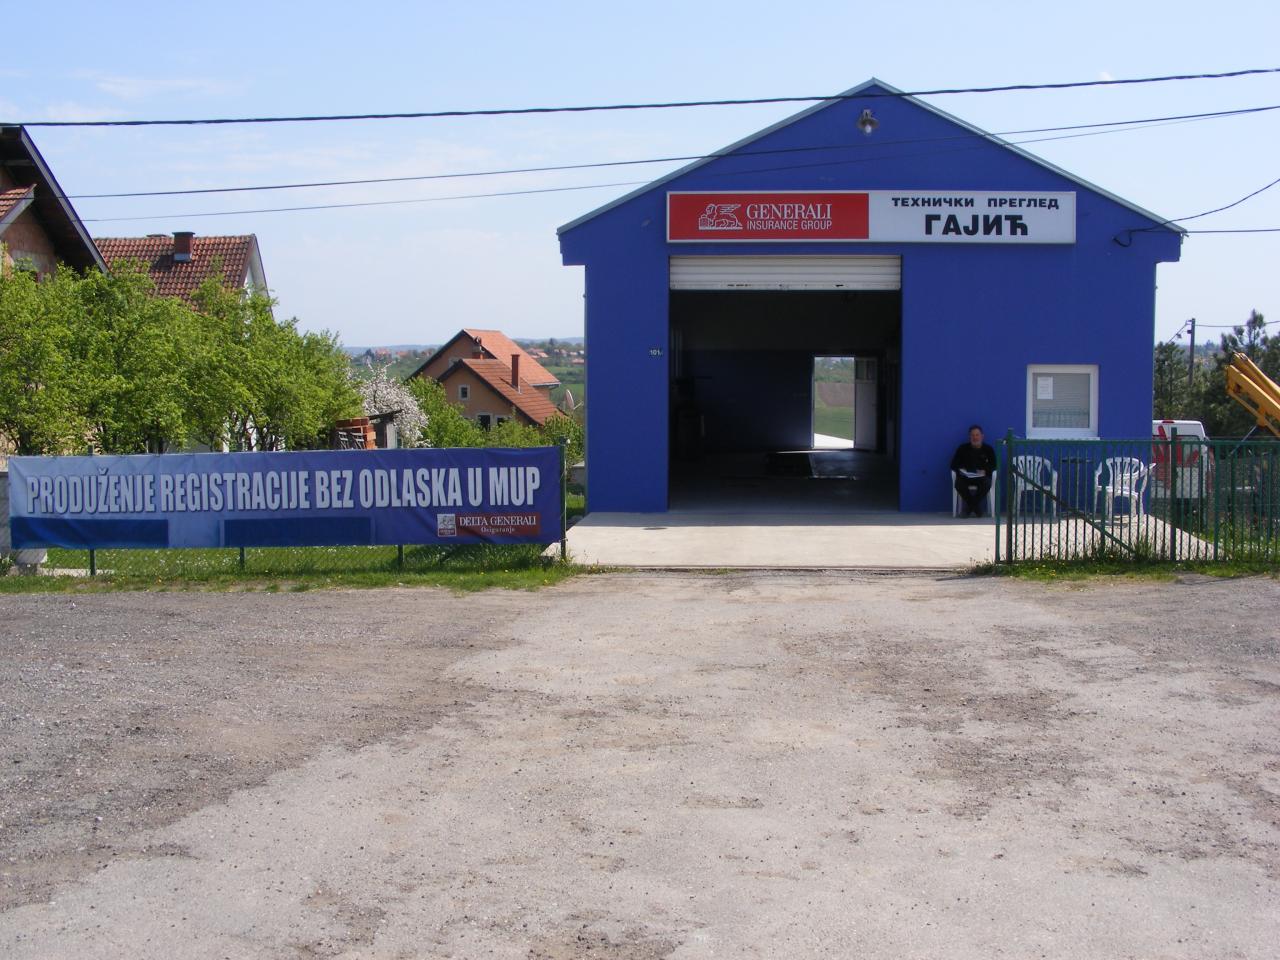 Slika 1 - TEHNIČKI PREGLED GAJIĆ - Registracija vozila, tehnički pregled, Barajevo